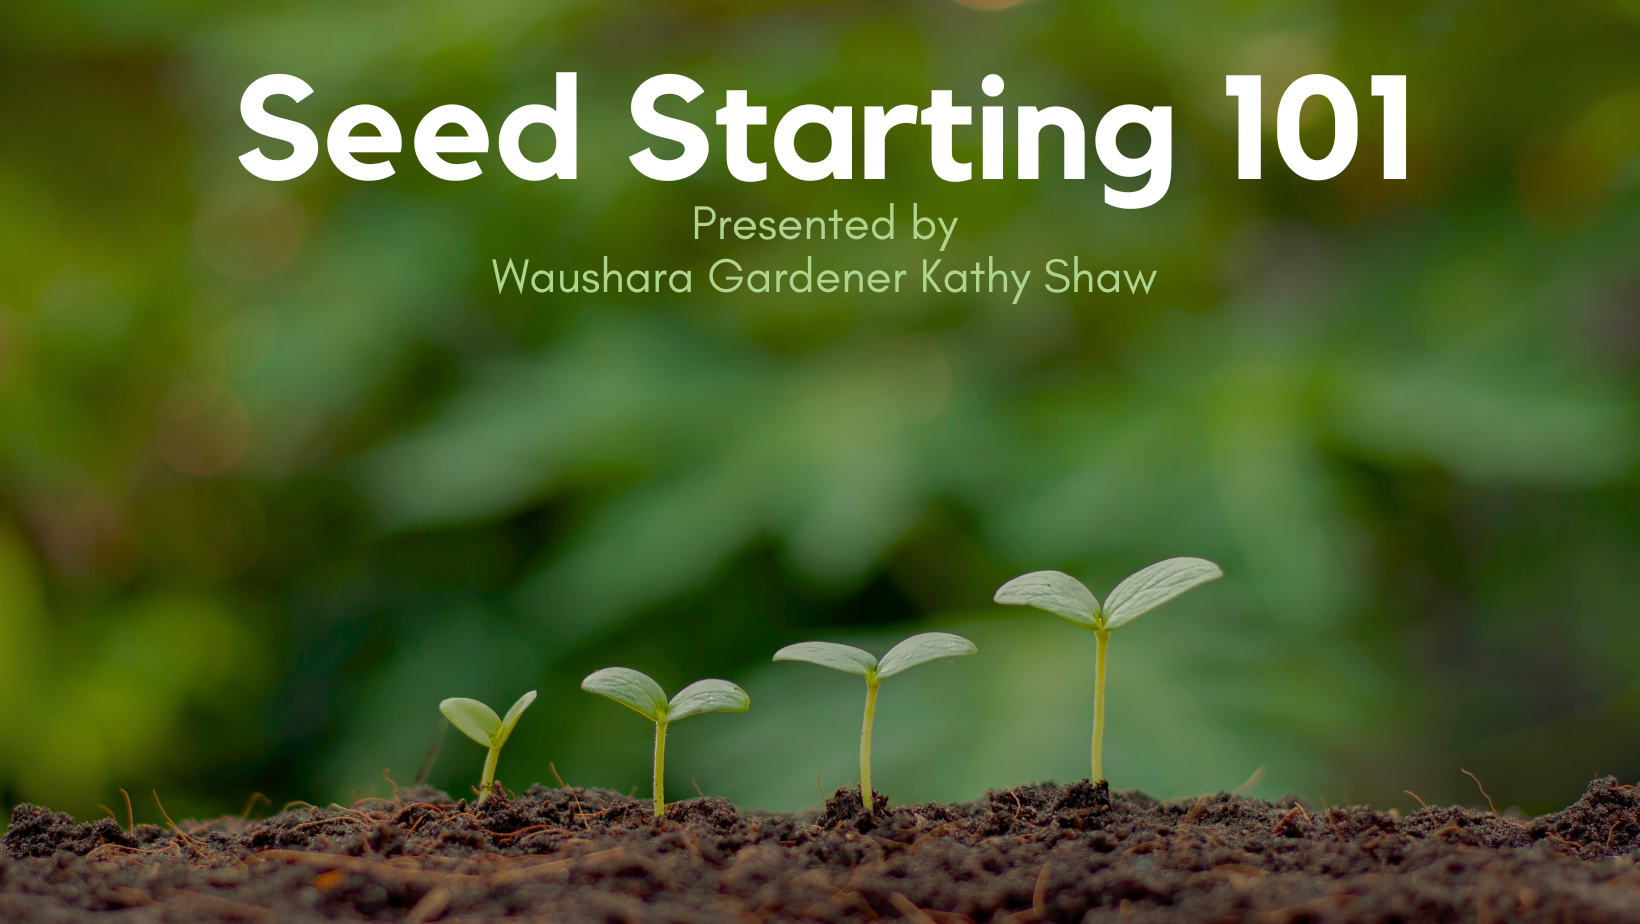 Seed Starting 101